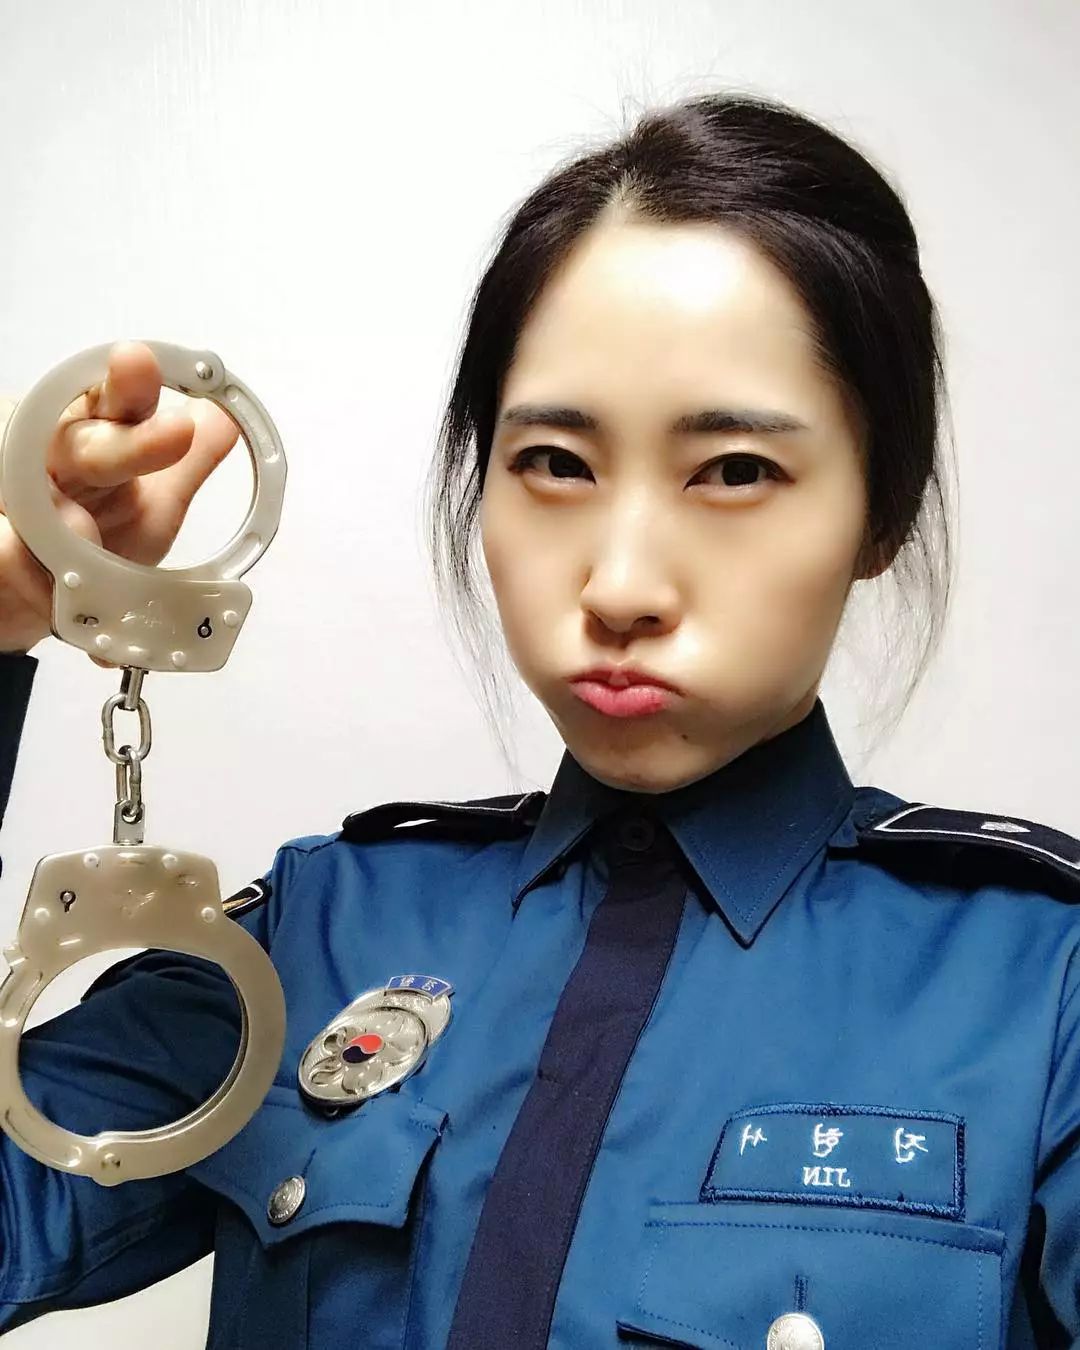 韩国警察警服图片